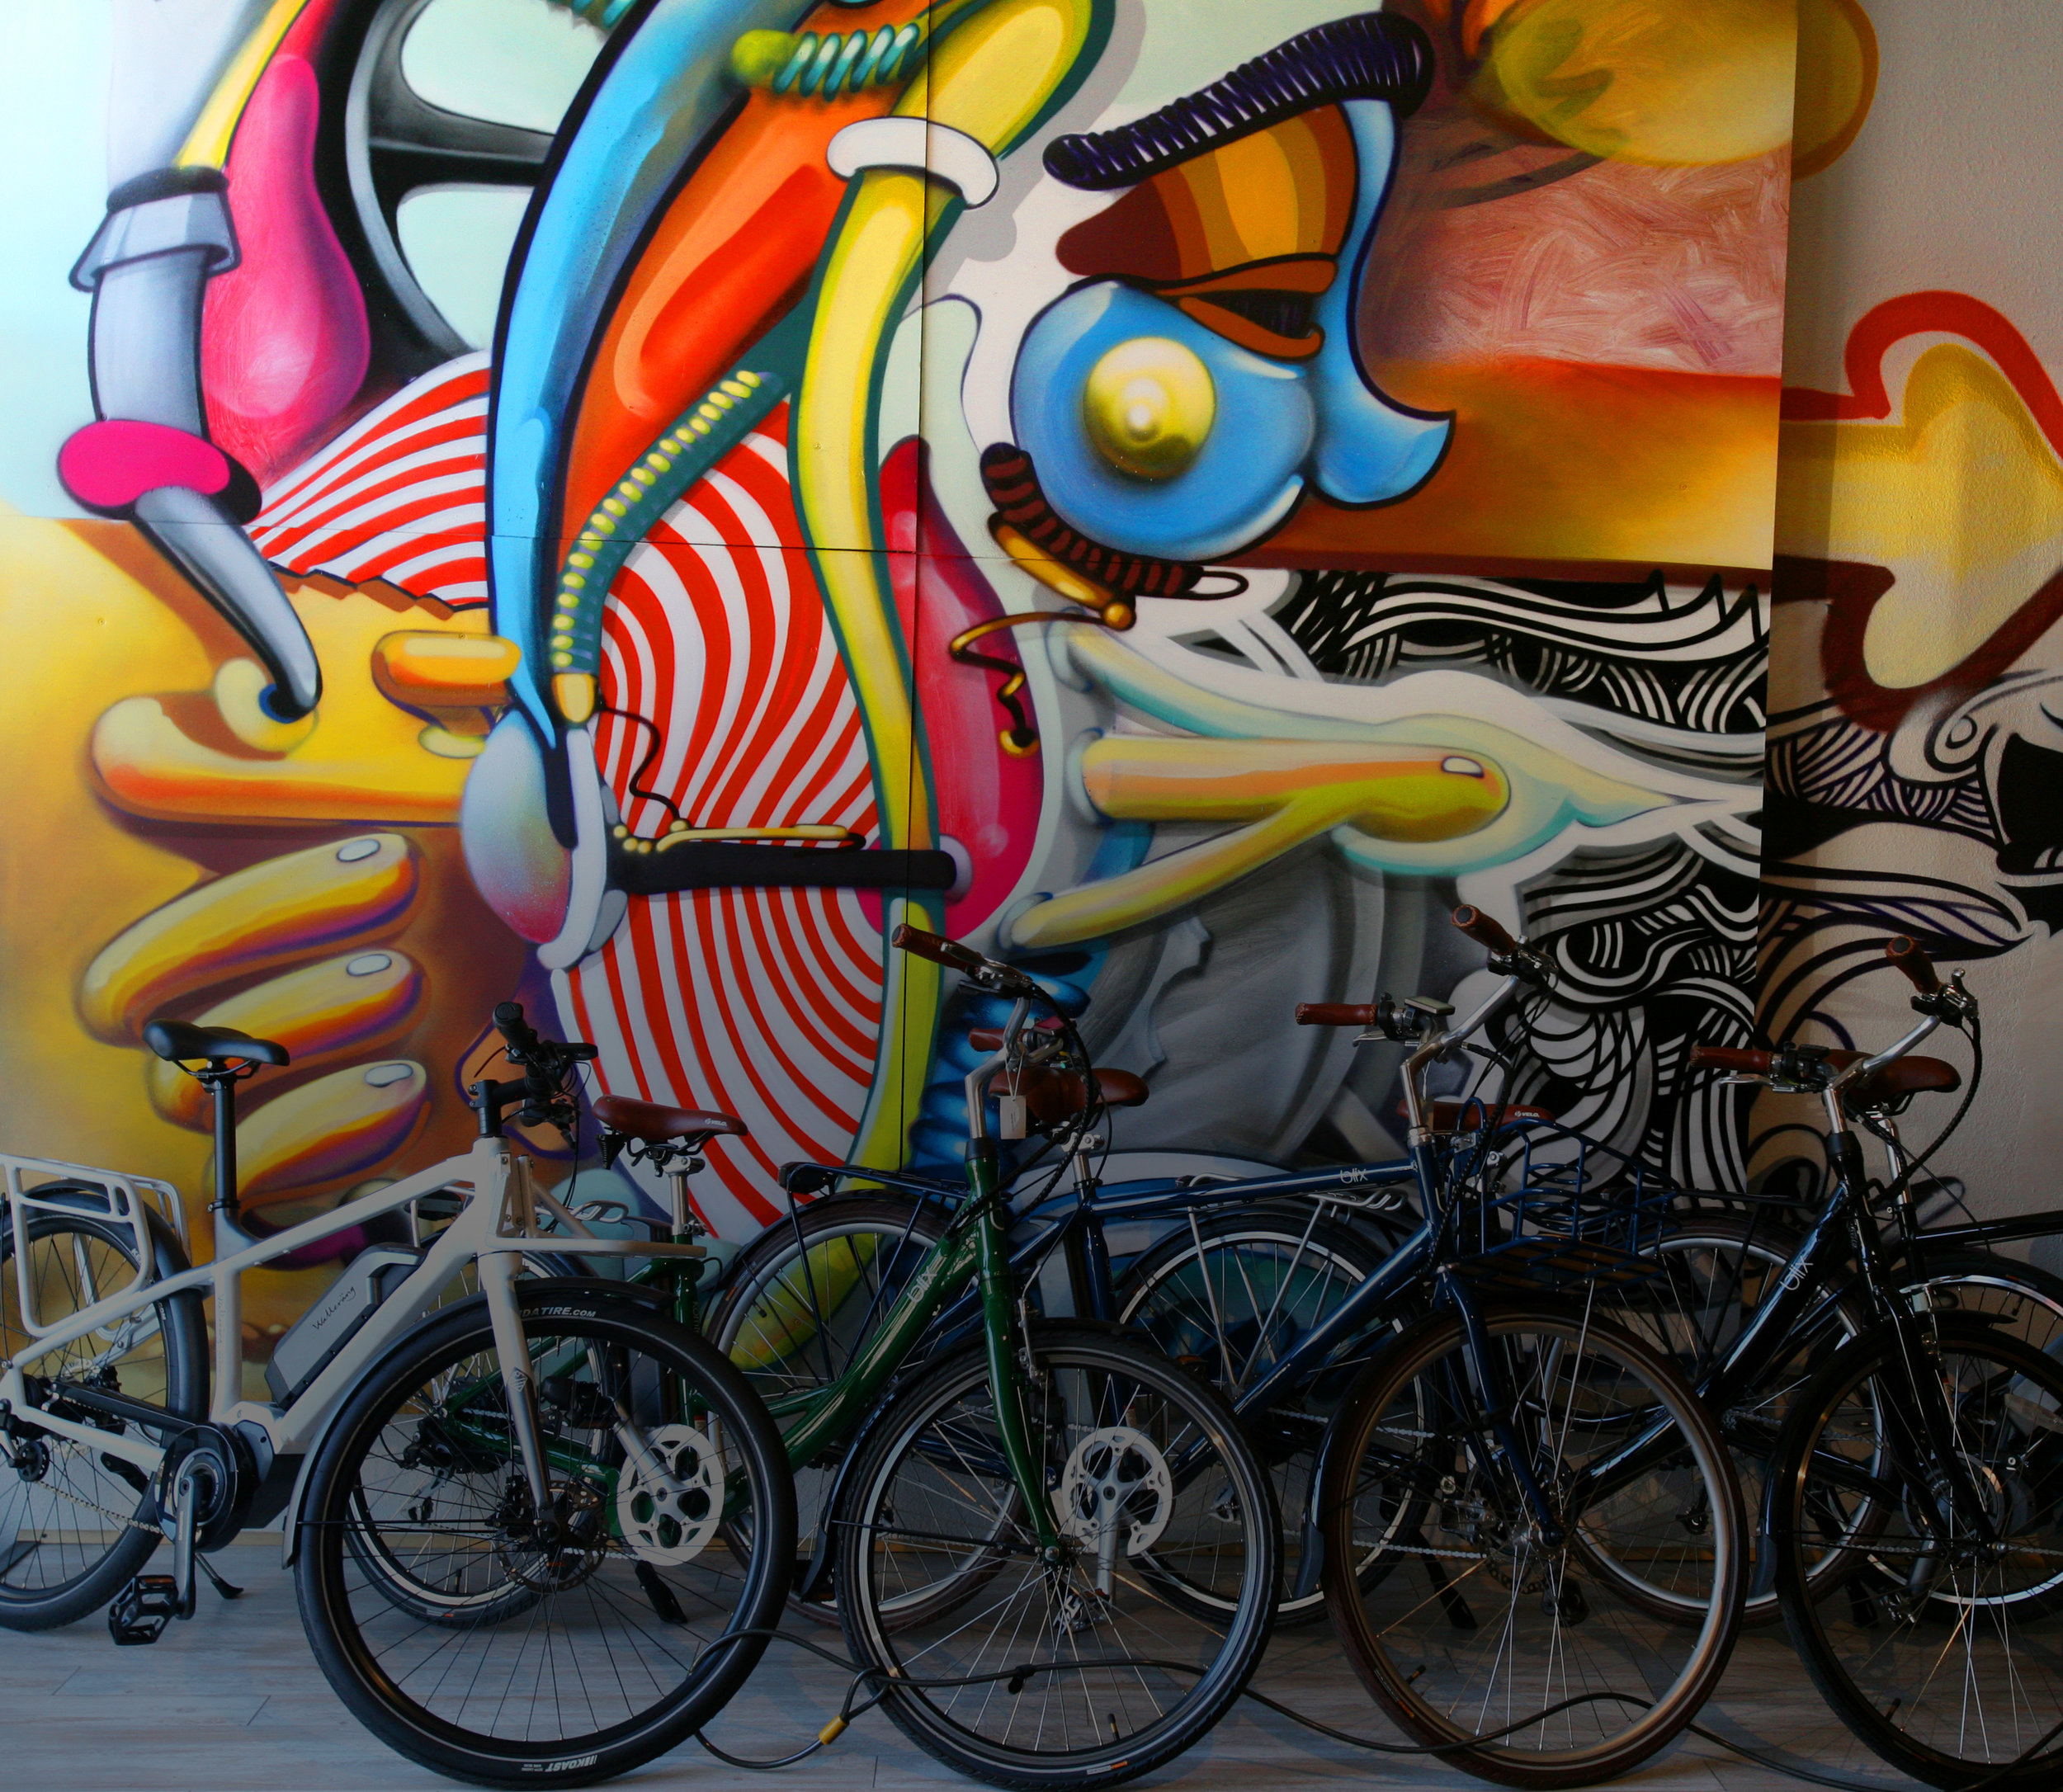 velocipede bike shop